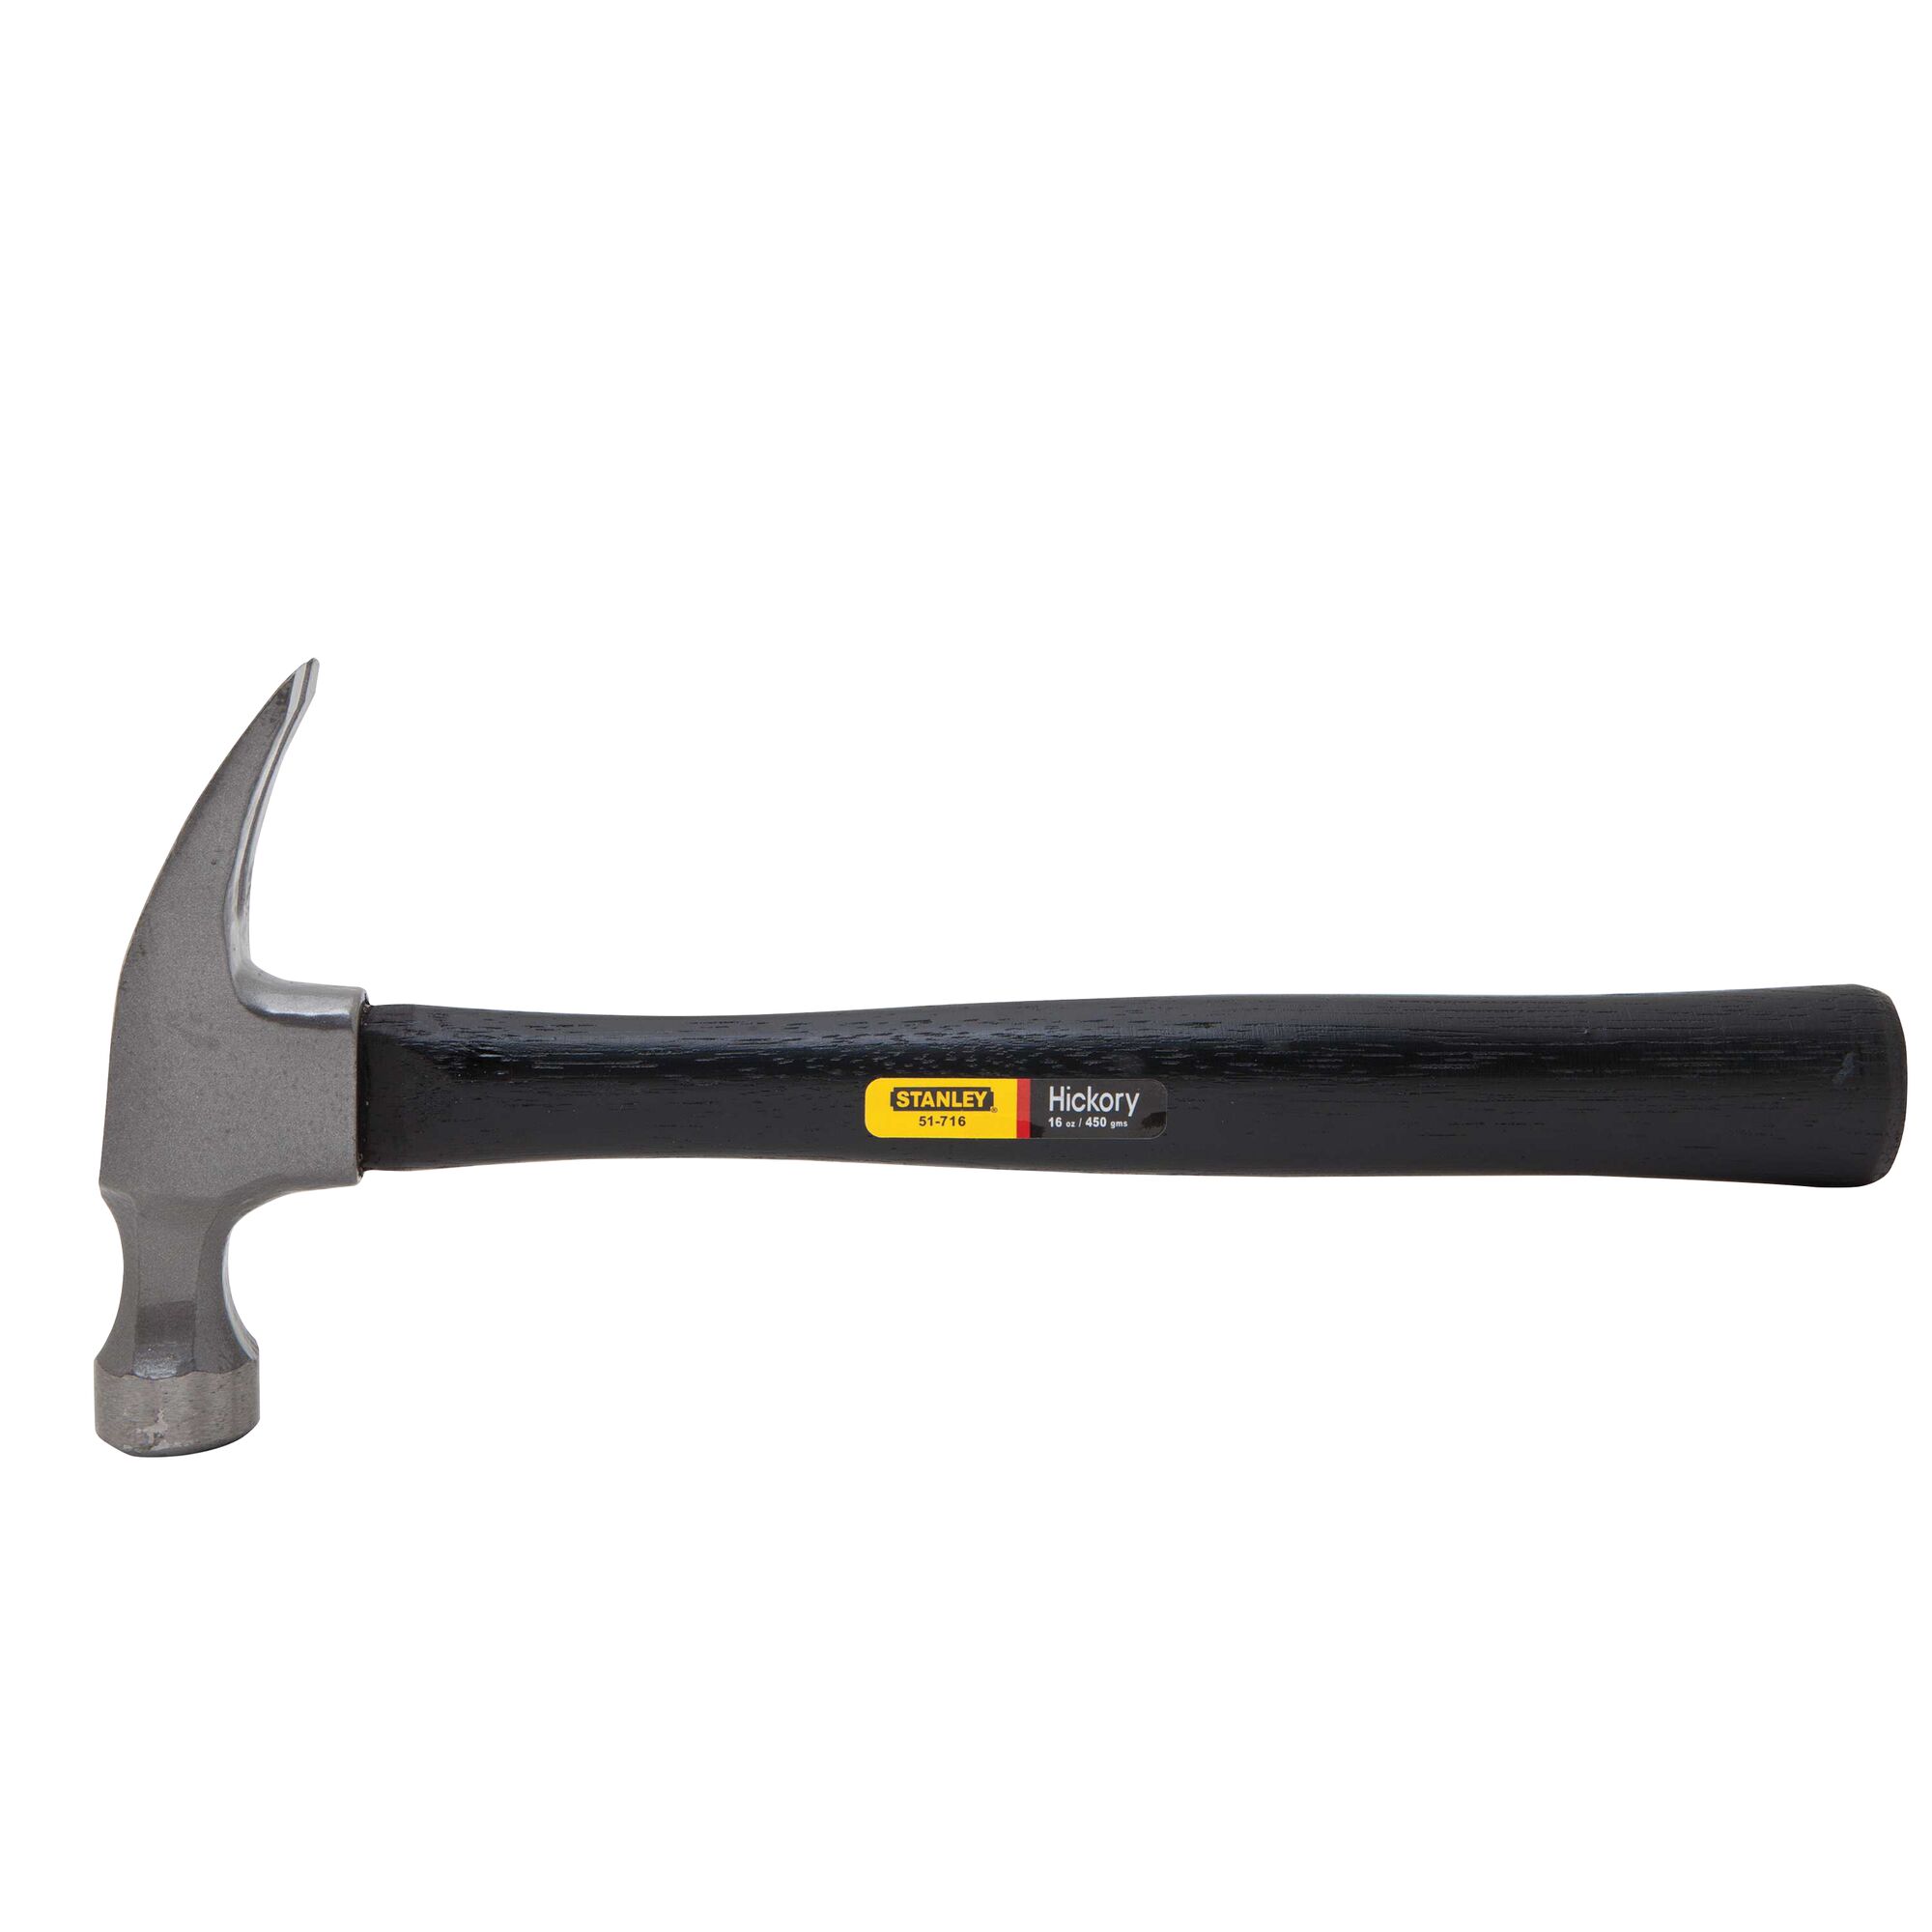 16 oz Rip Claw Wood Handle Hammer | STANLEY